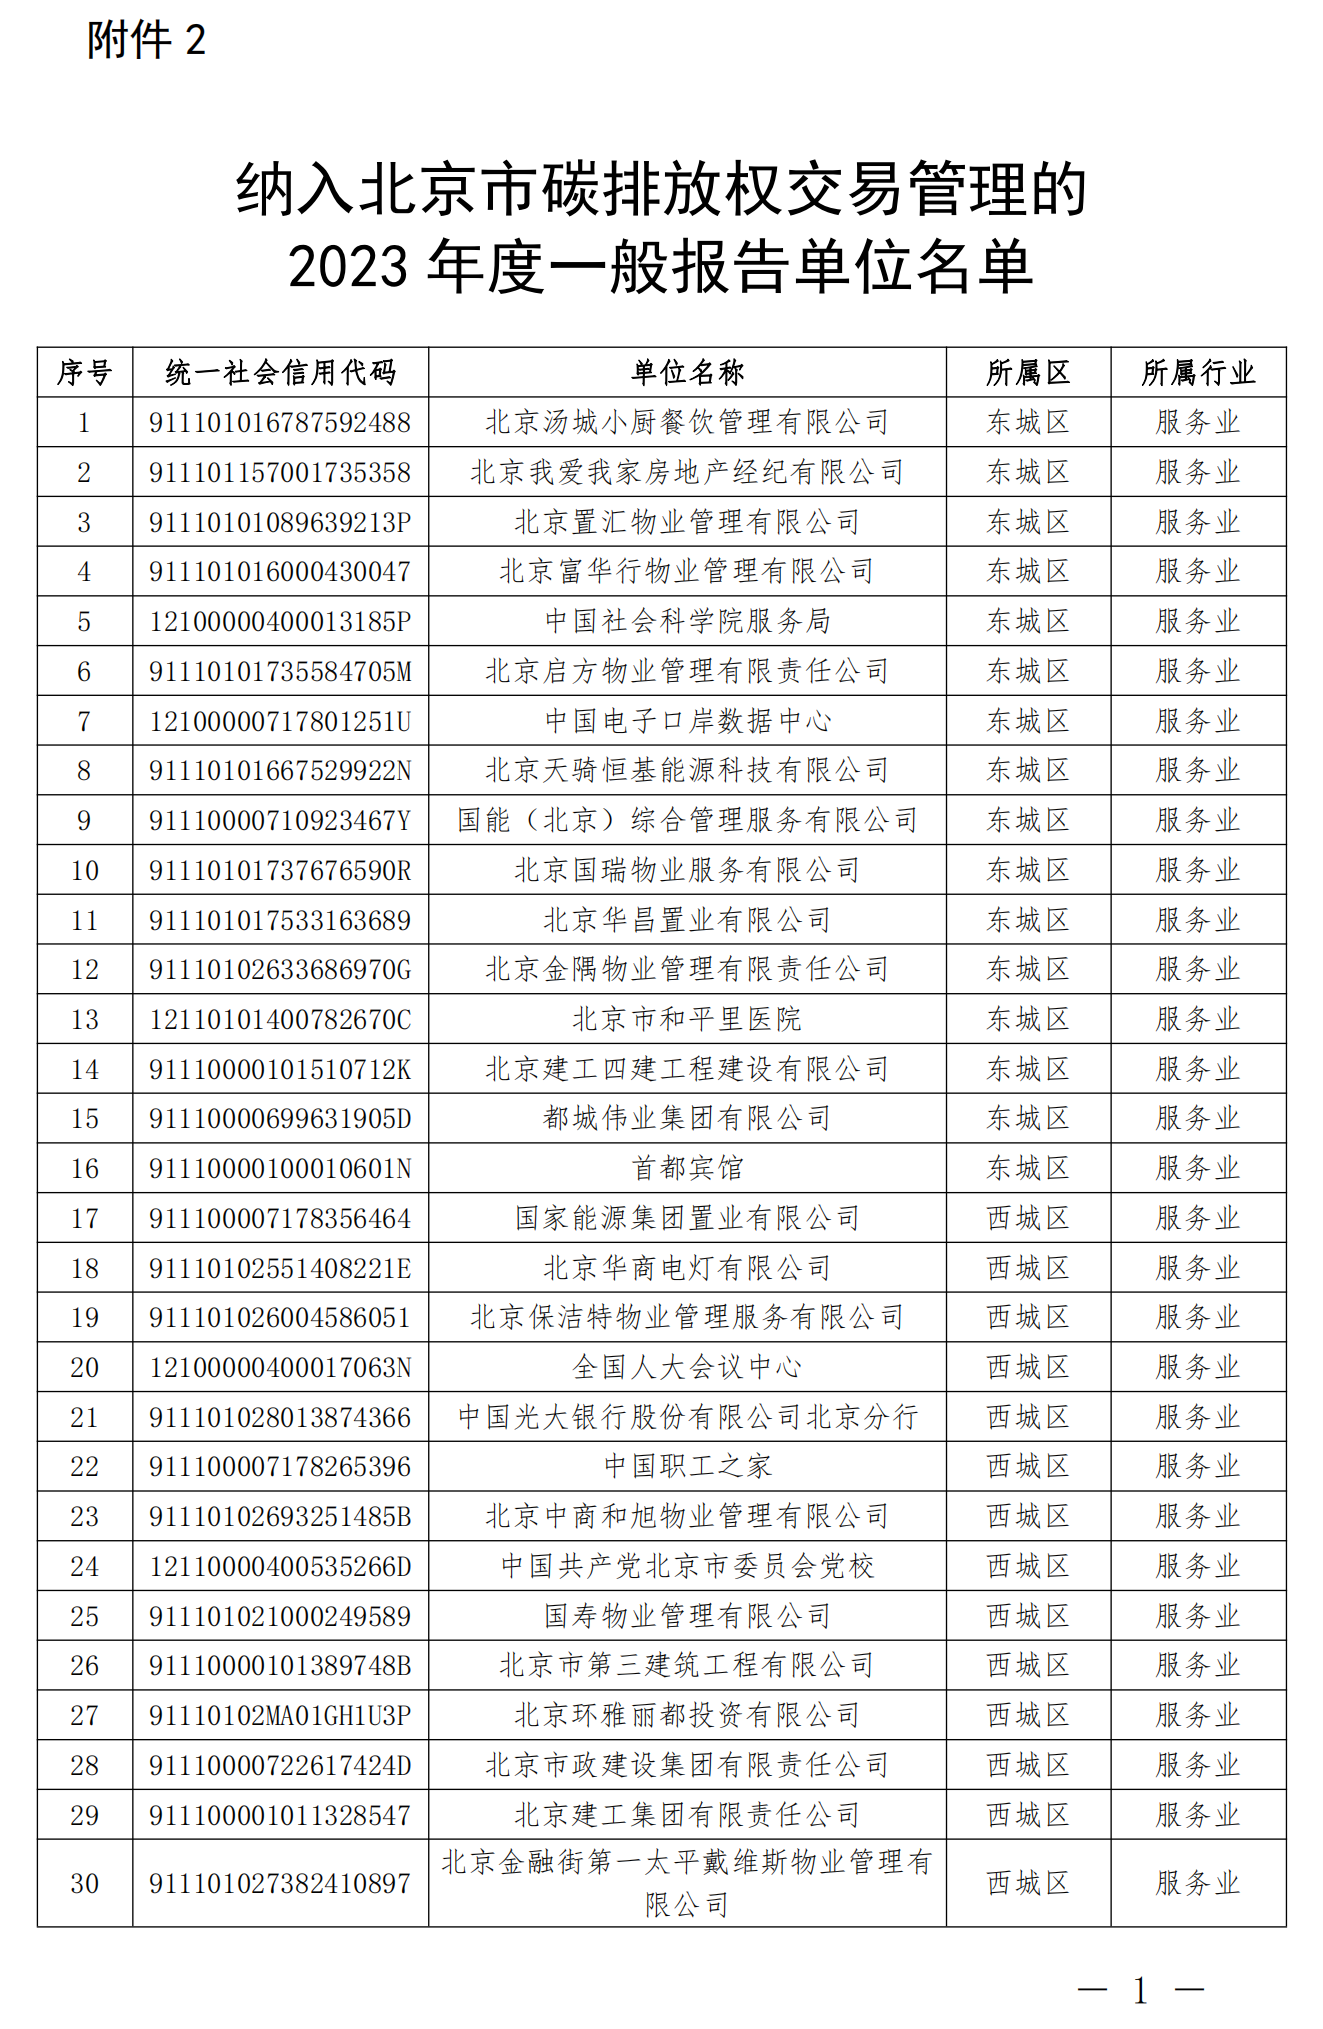 2.纳入北京市碳排放权交易管理的2023年度一般报告单位名单_00